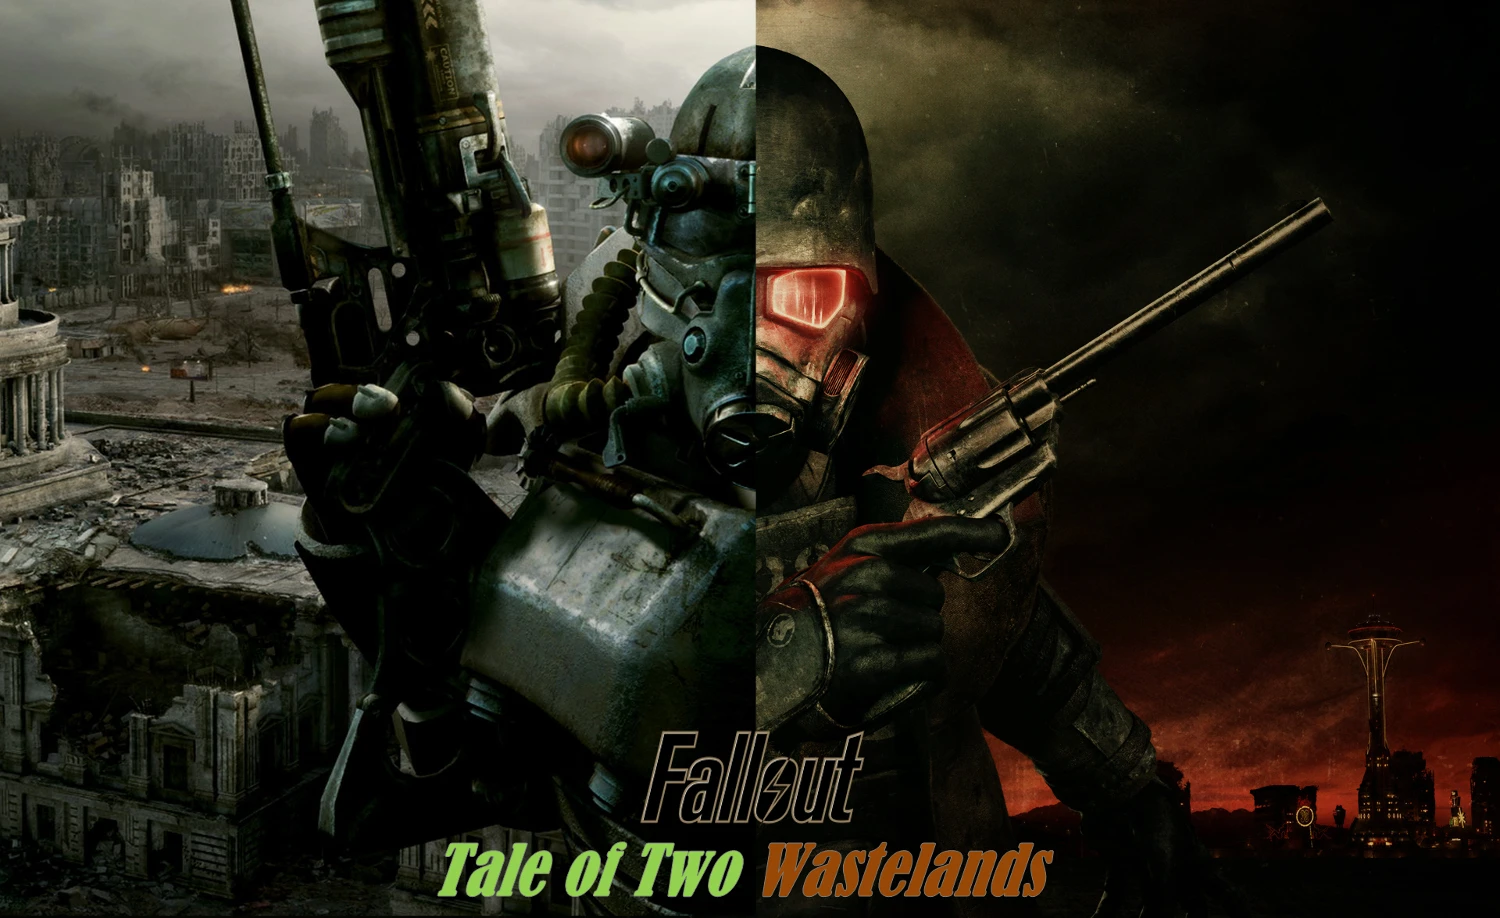 Fallout 4 marksman attachments magazine фото 19